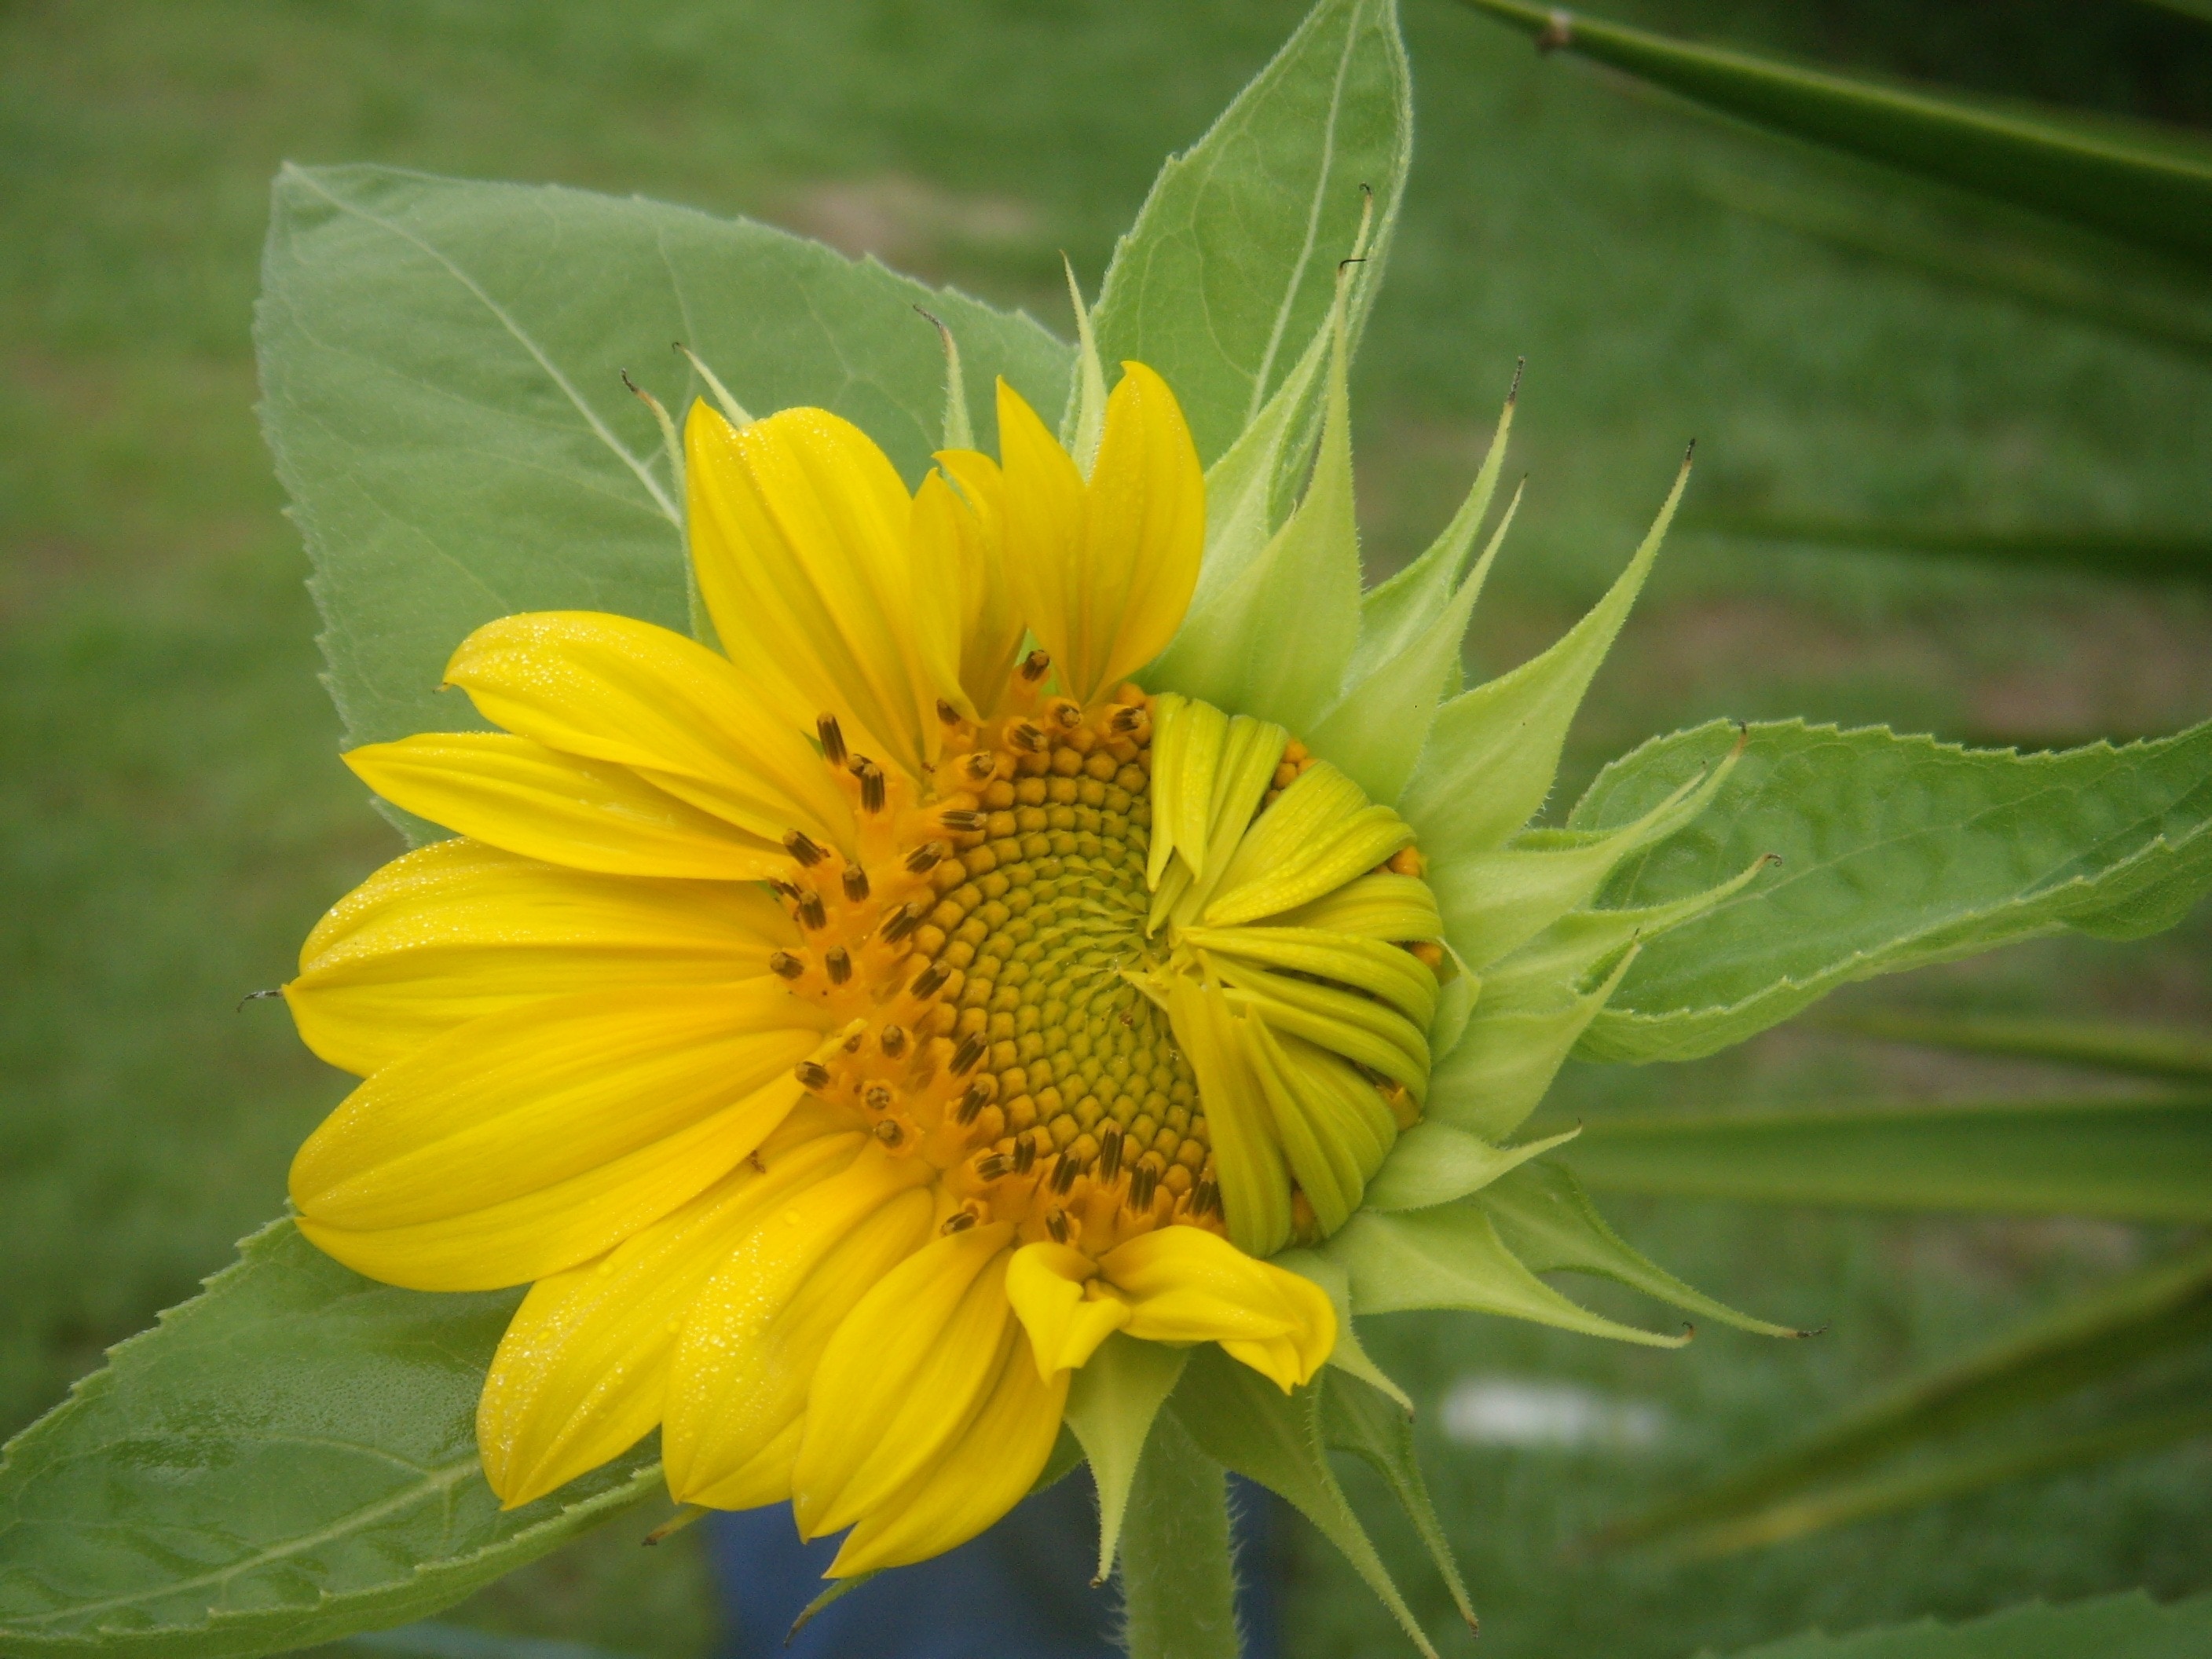 yellow sunflower shown